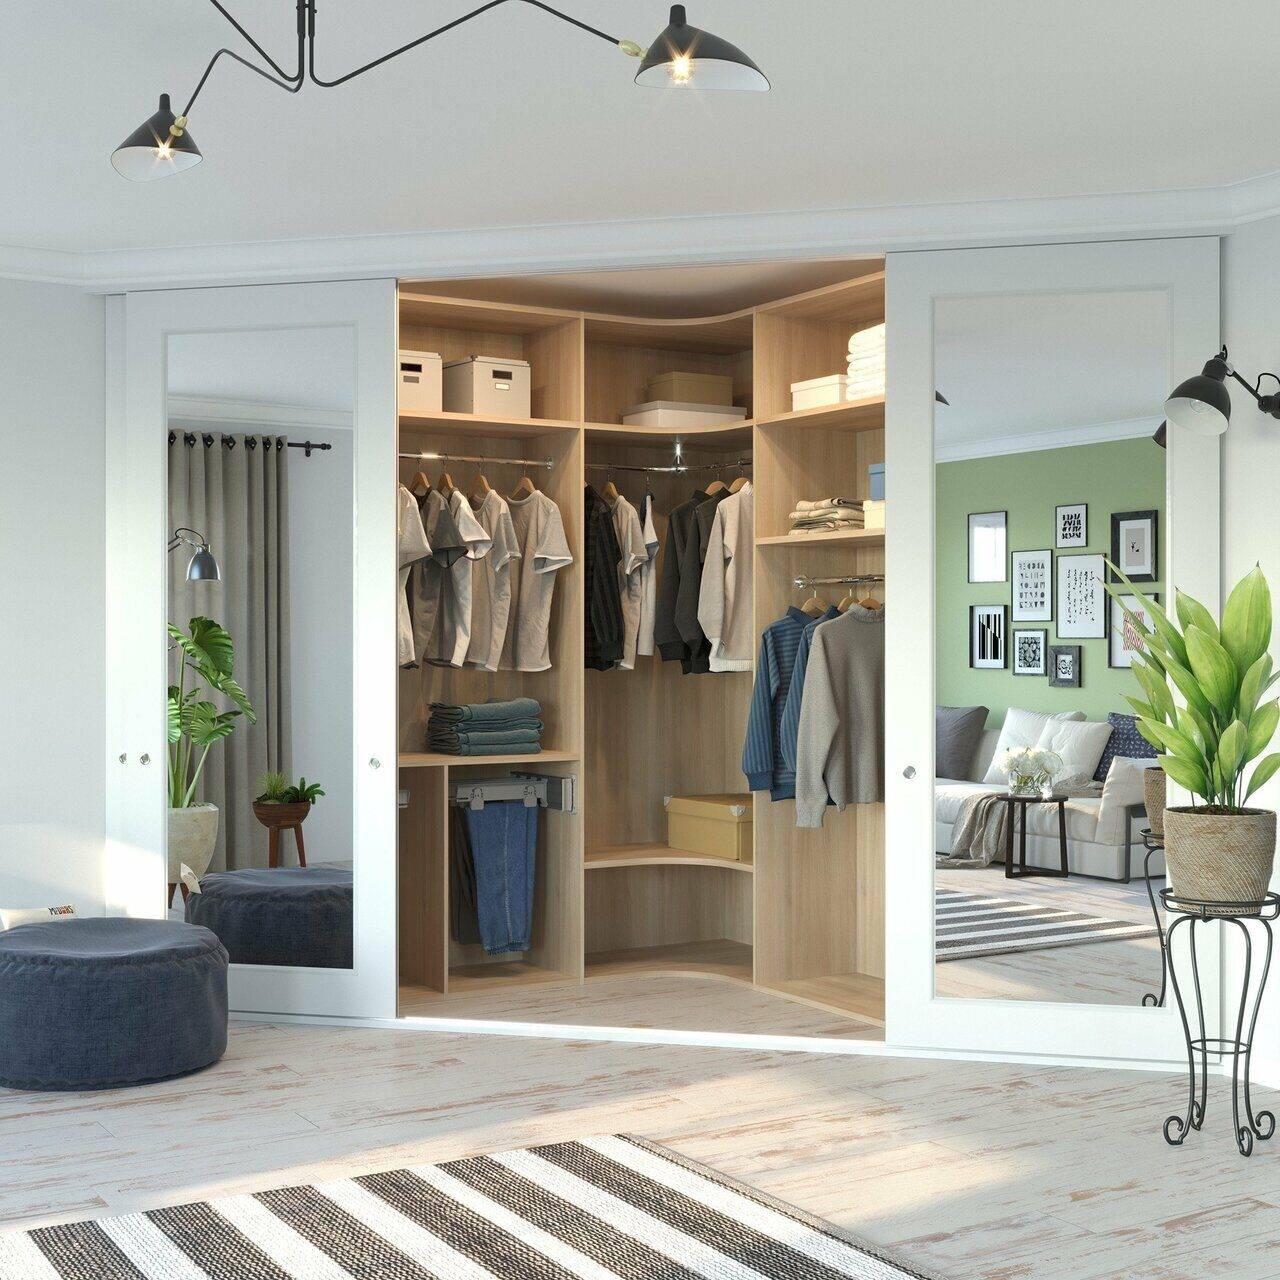 Дизайн угловой гардеробной комнаты маленького размера